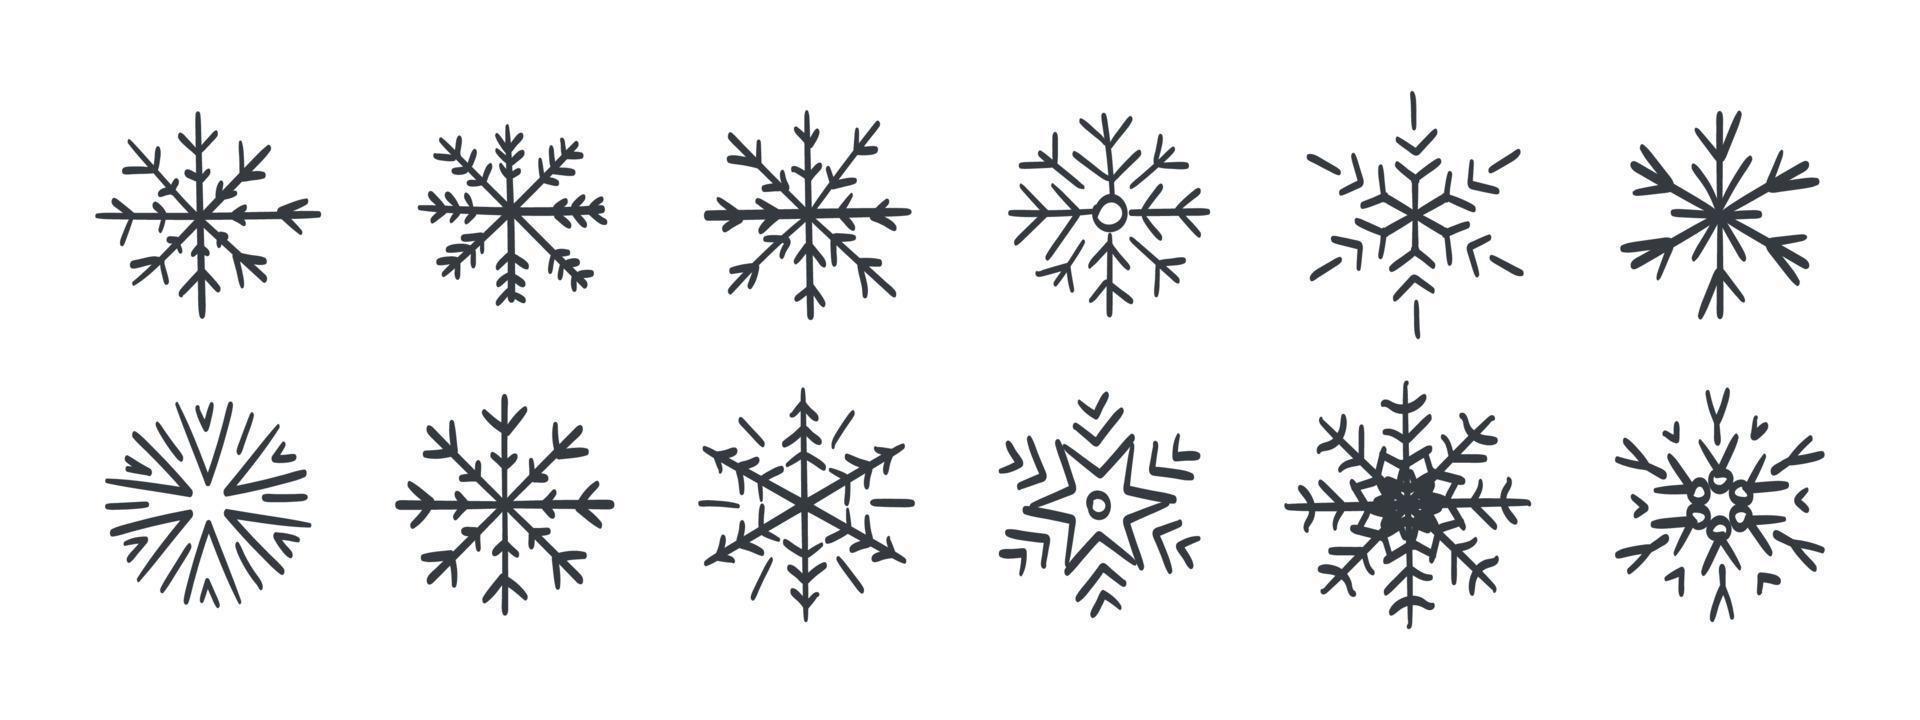 flocons de neige. un ensemble de flocons de neige dessinés à la main. flocons de neige de styles et de formes différents. illustration vectorielle vecteur